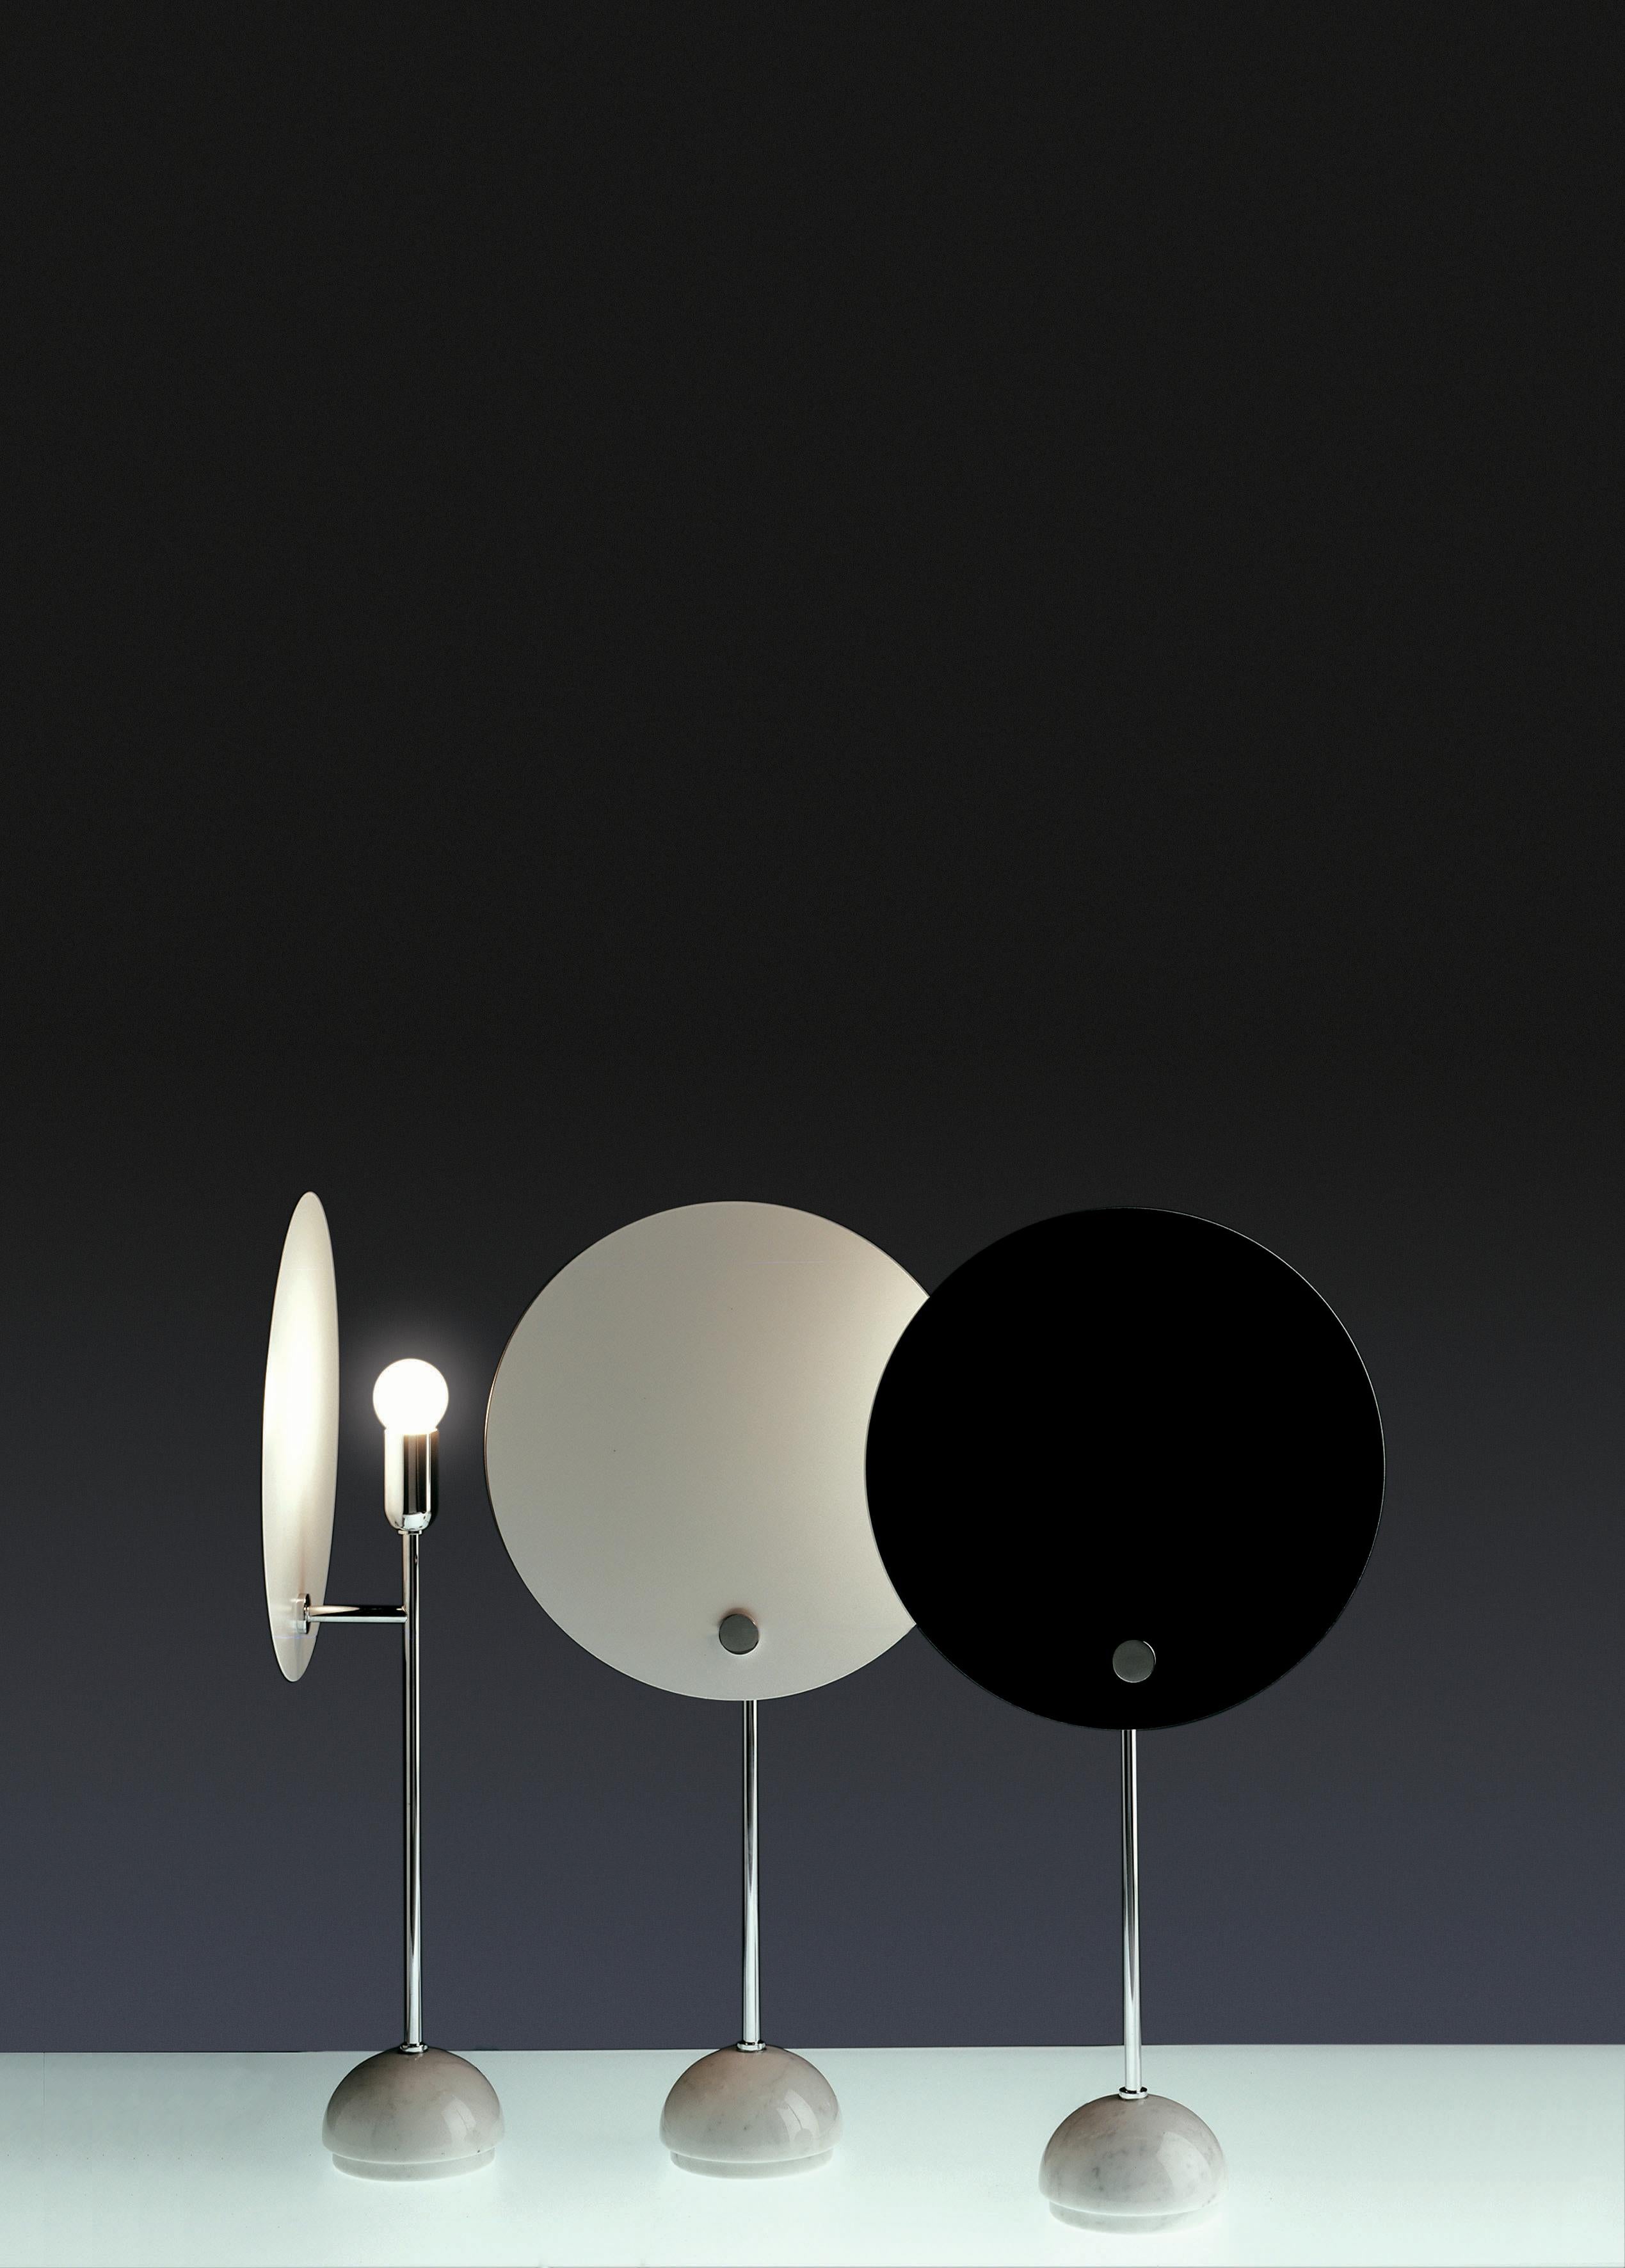 Vico Magistretti 'Kuta' Tischleuchte für Nemo in schwarz.

Eine Tischleuchte mit einem kreisförmigen Reflektor aus Aluminium, die mit ihrem raffinierten Design den Effekt einer Sonnenfinsternis erzeugt. Diese autorisierte Neuauflage mit